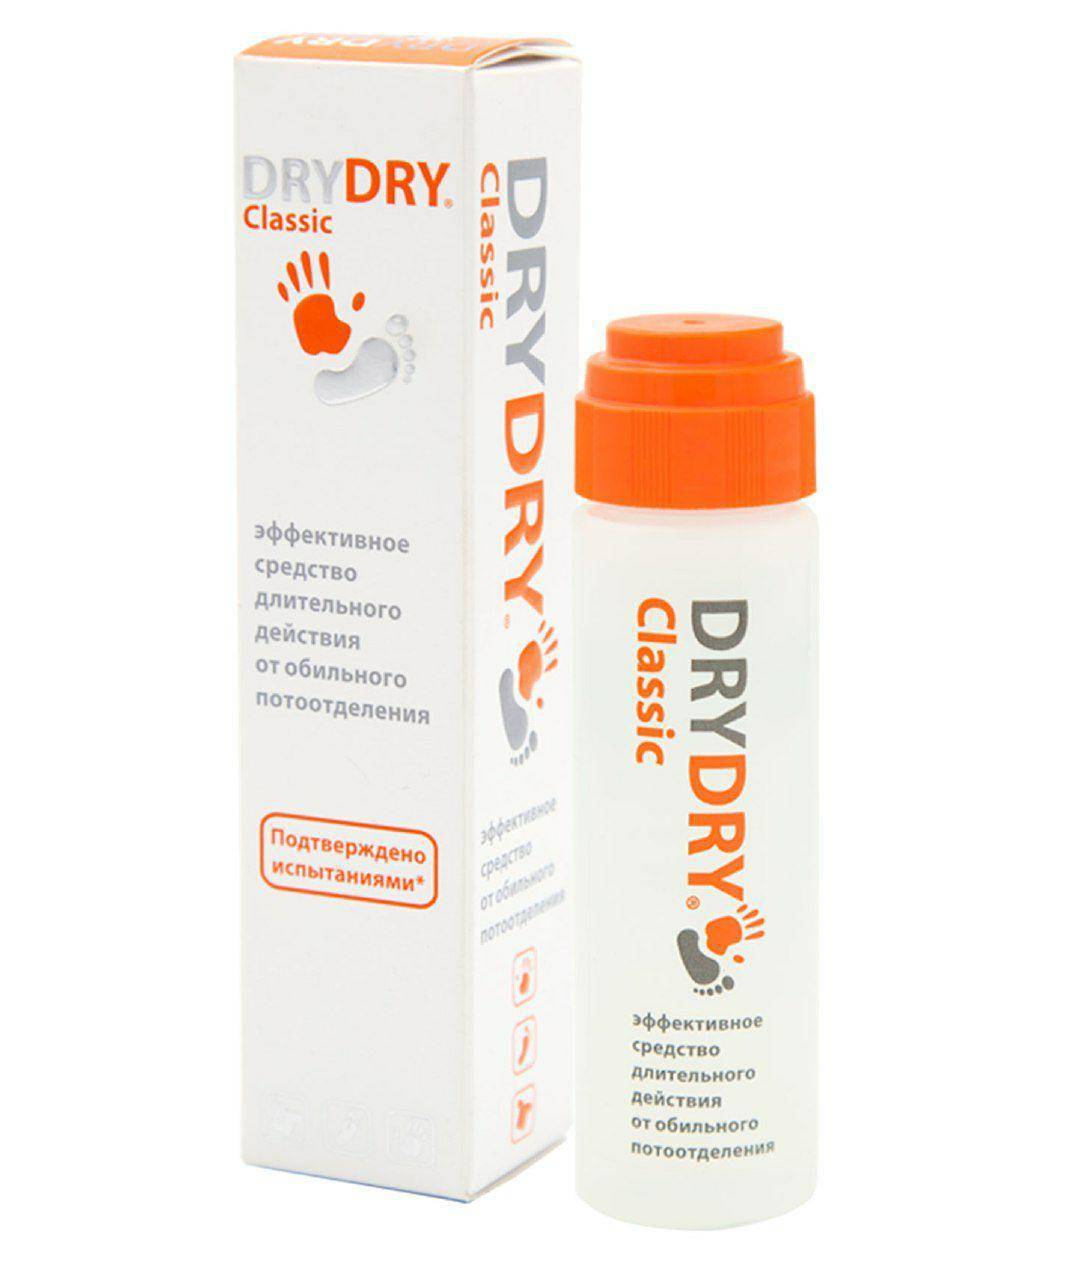 Отзывы о дезодорант dry dry